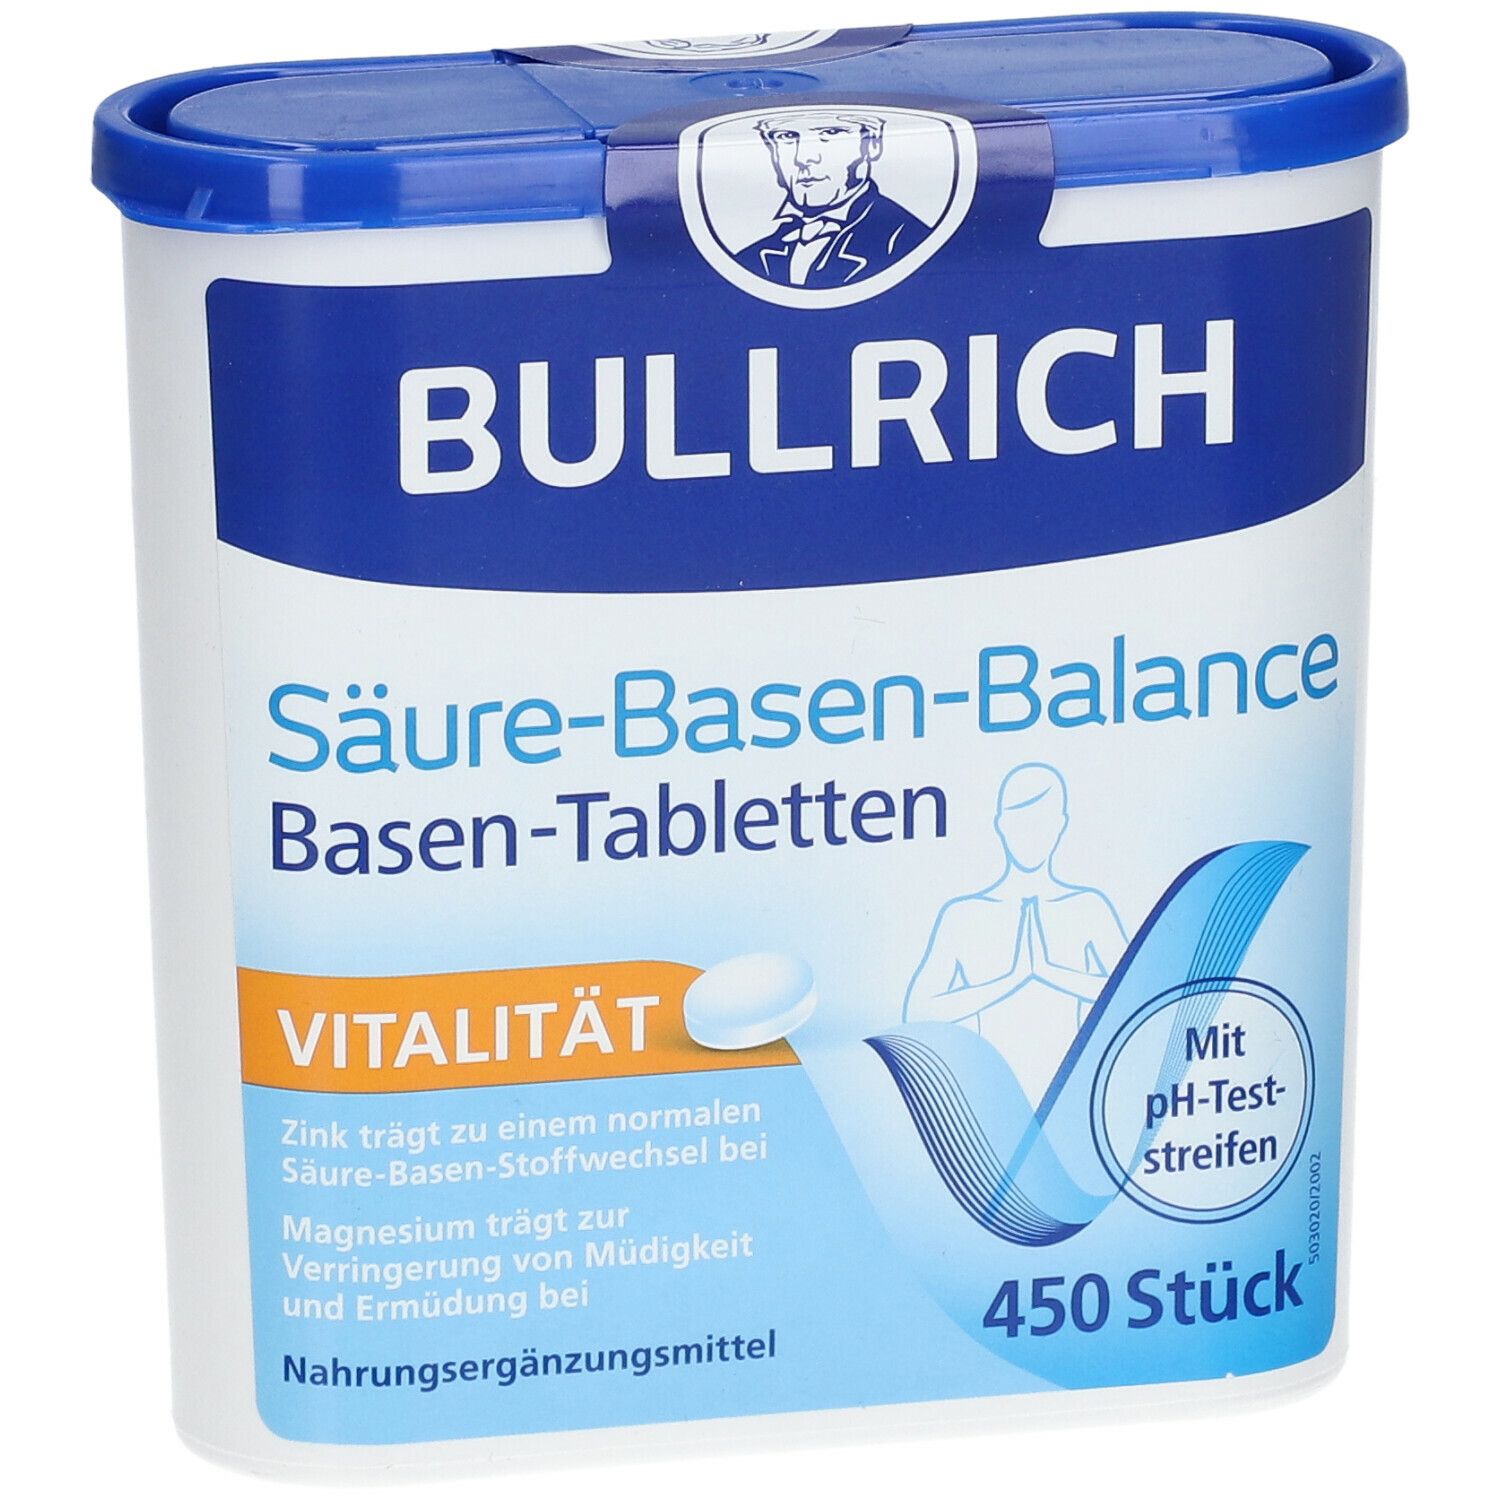 Bullrich Säure-Basen-Balance Tabletten